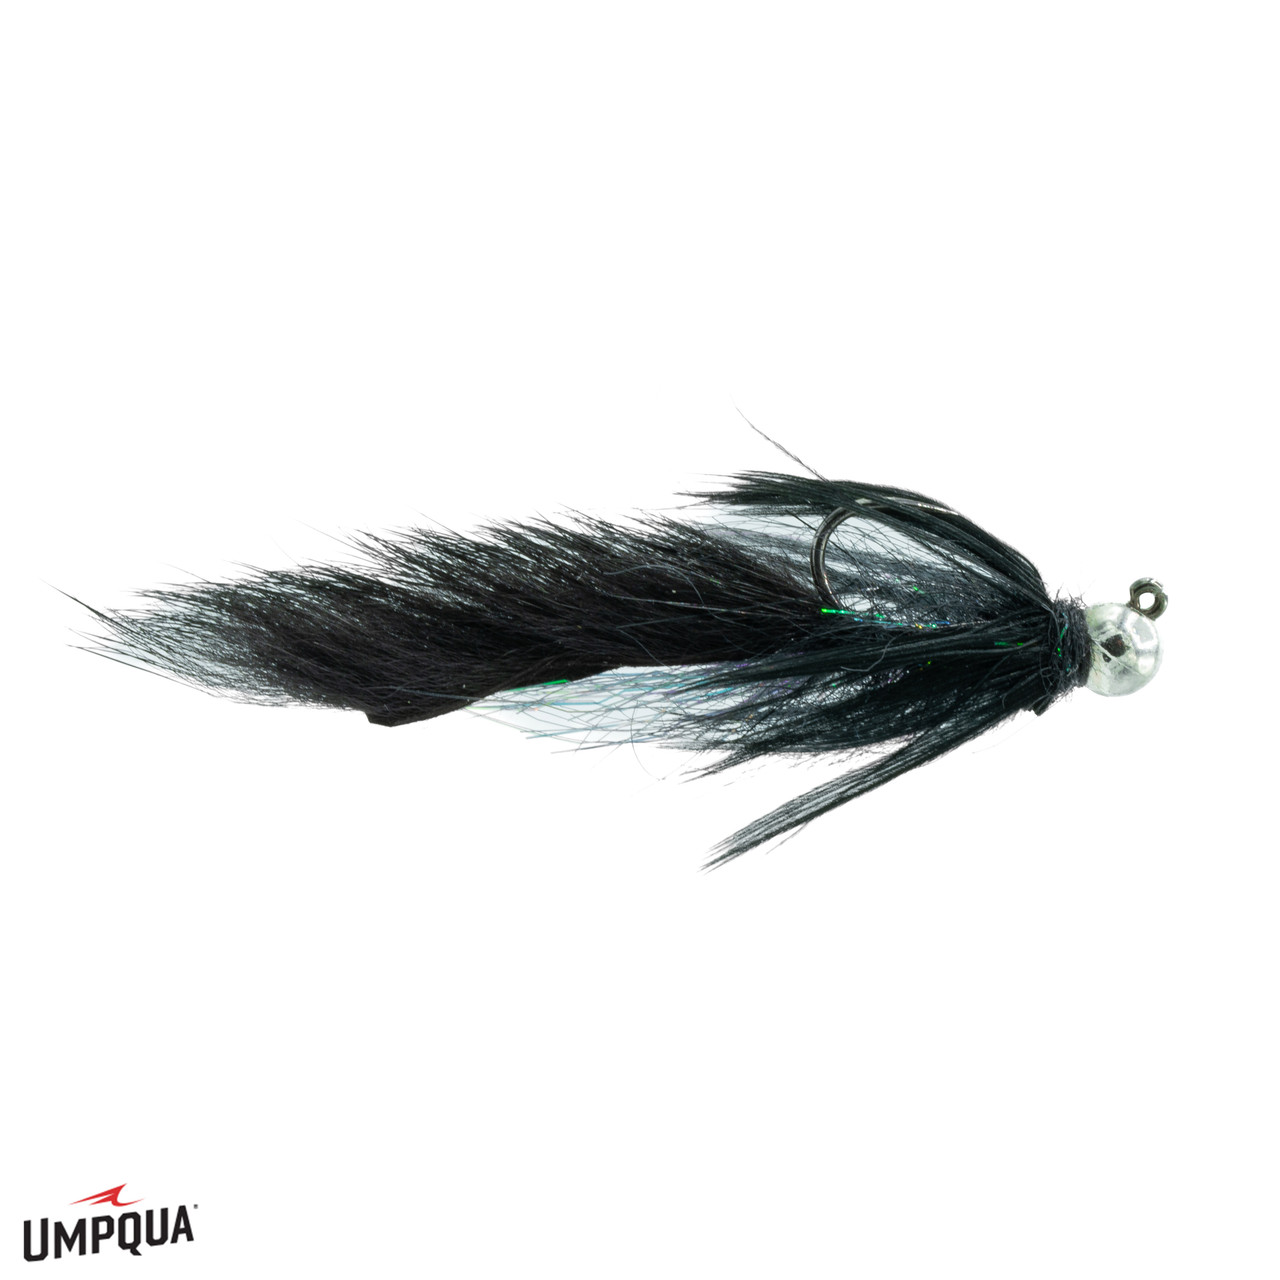 POACHER - Umpqua Feather Merchants